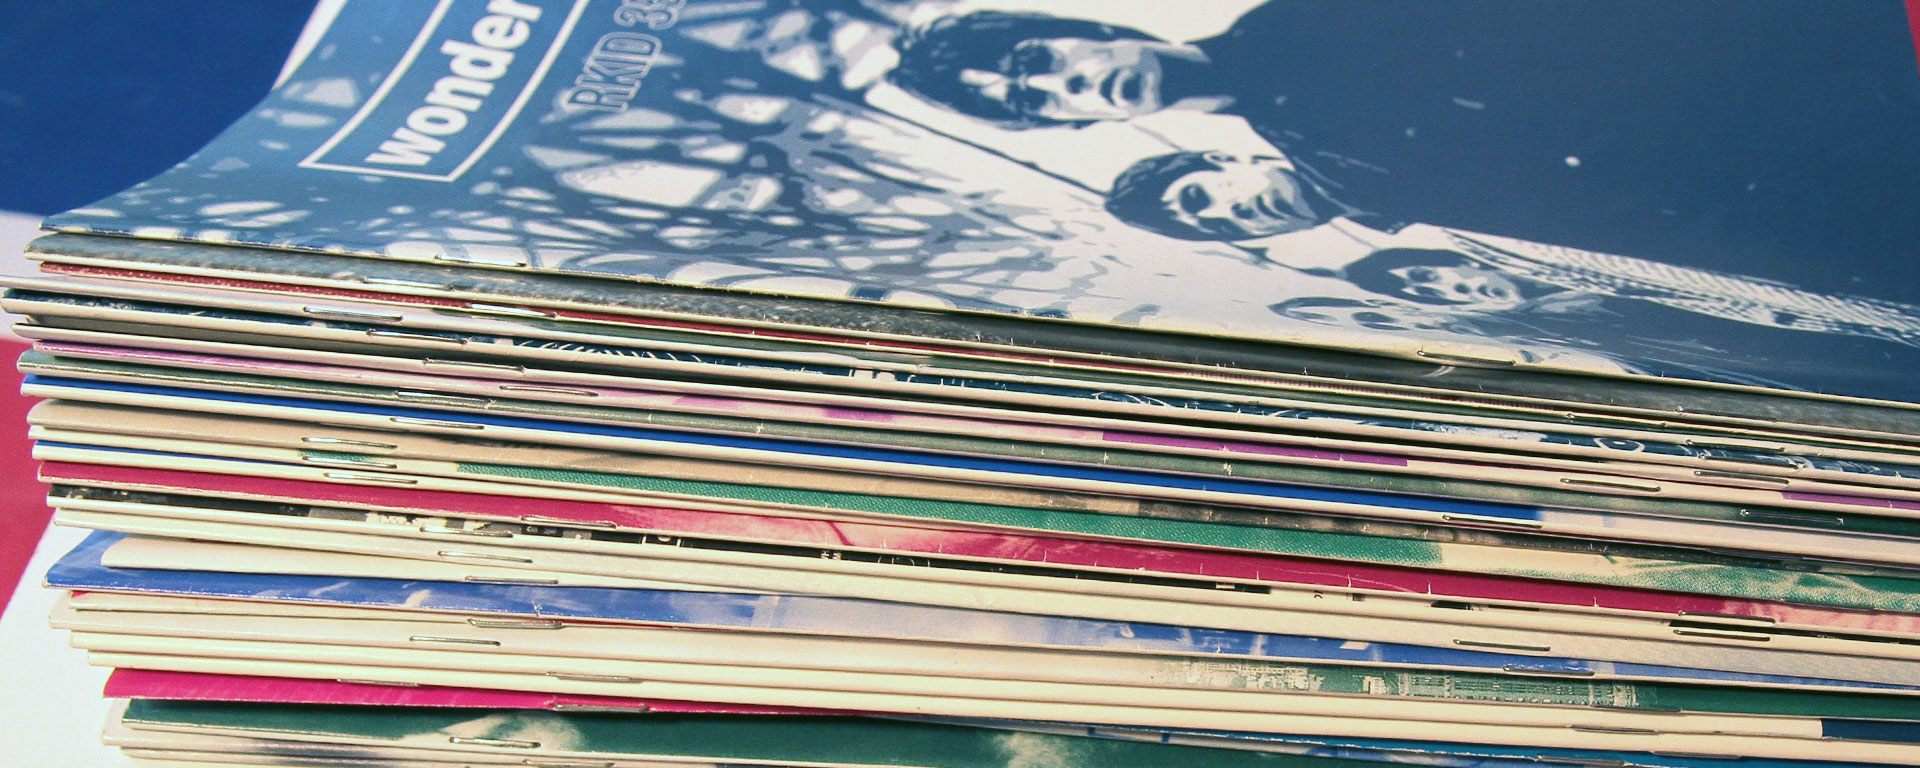 Oasis fanzines 1996-2010